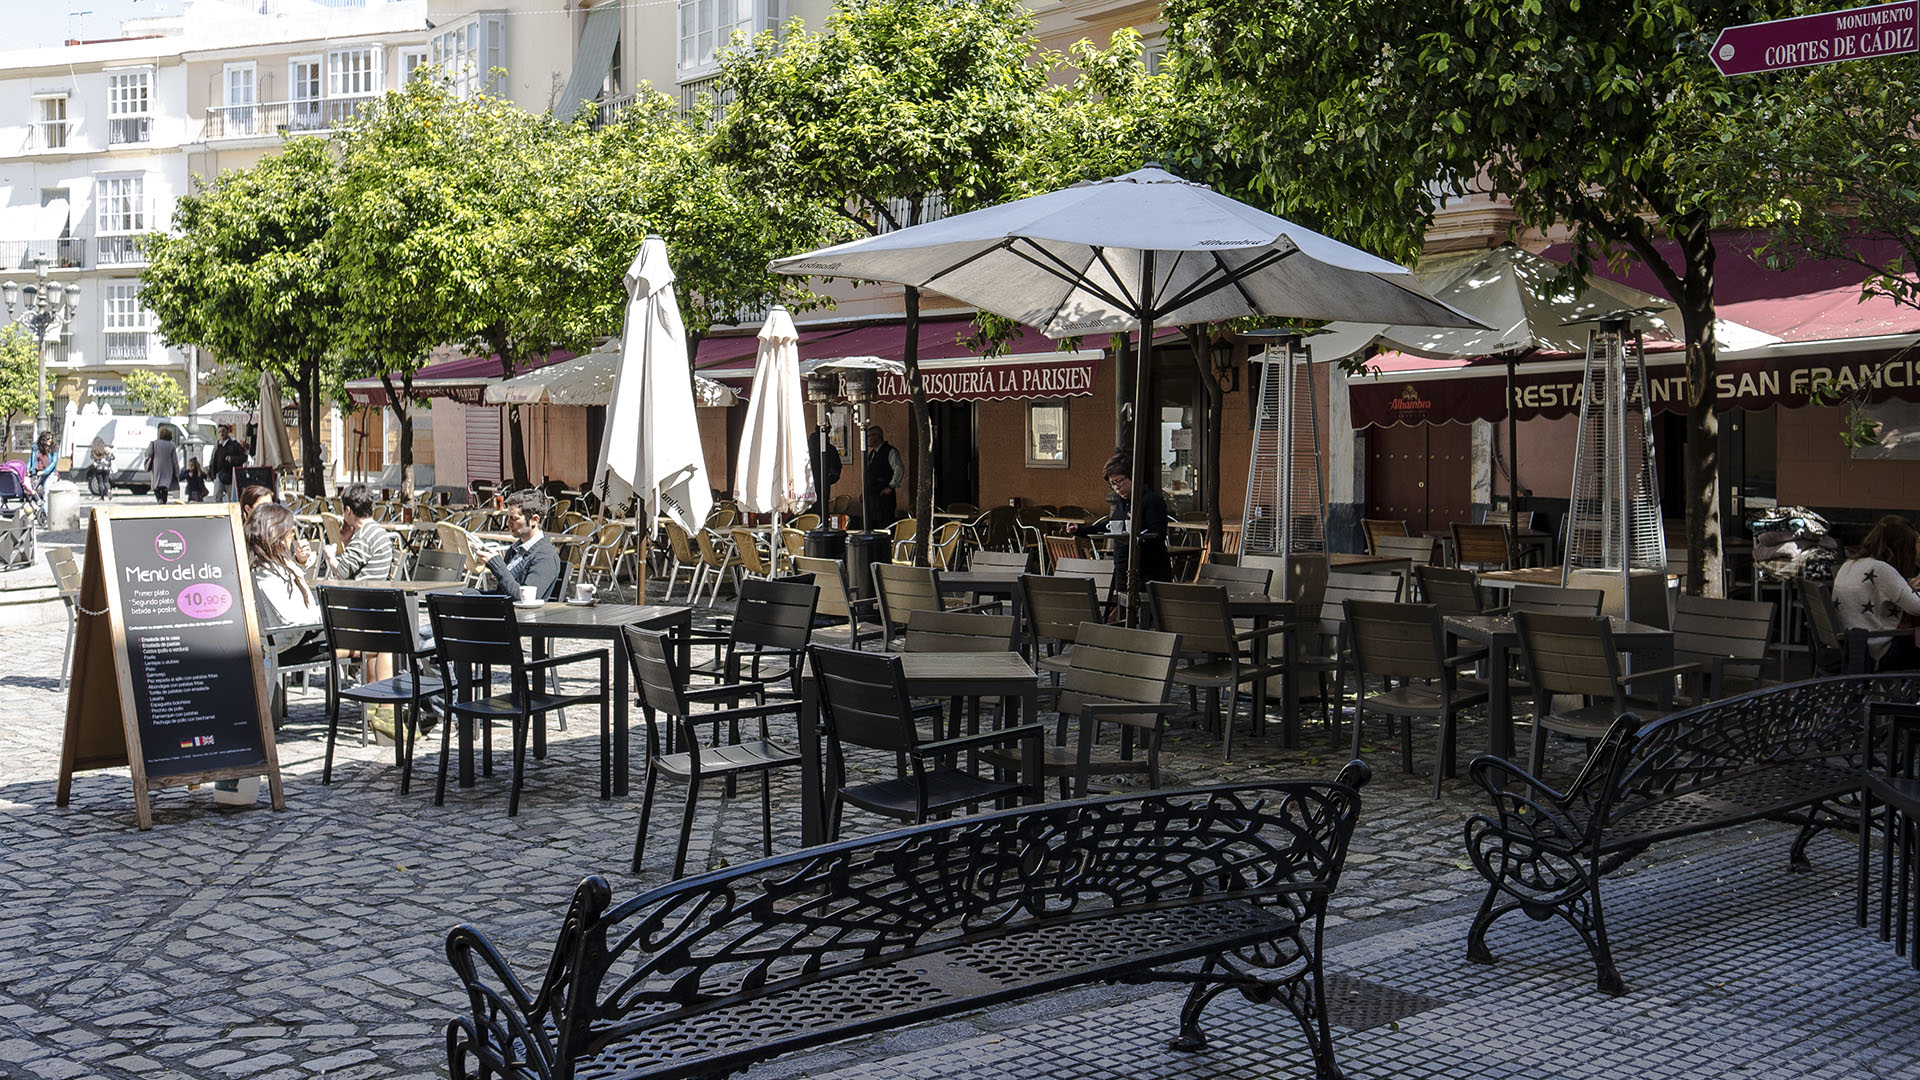 Überall in der Altstadt con Cádiz finden sich verstecke, lauschige Plätze.